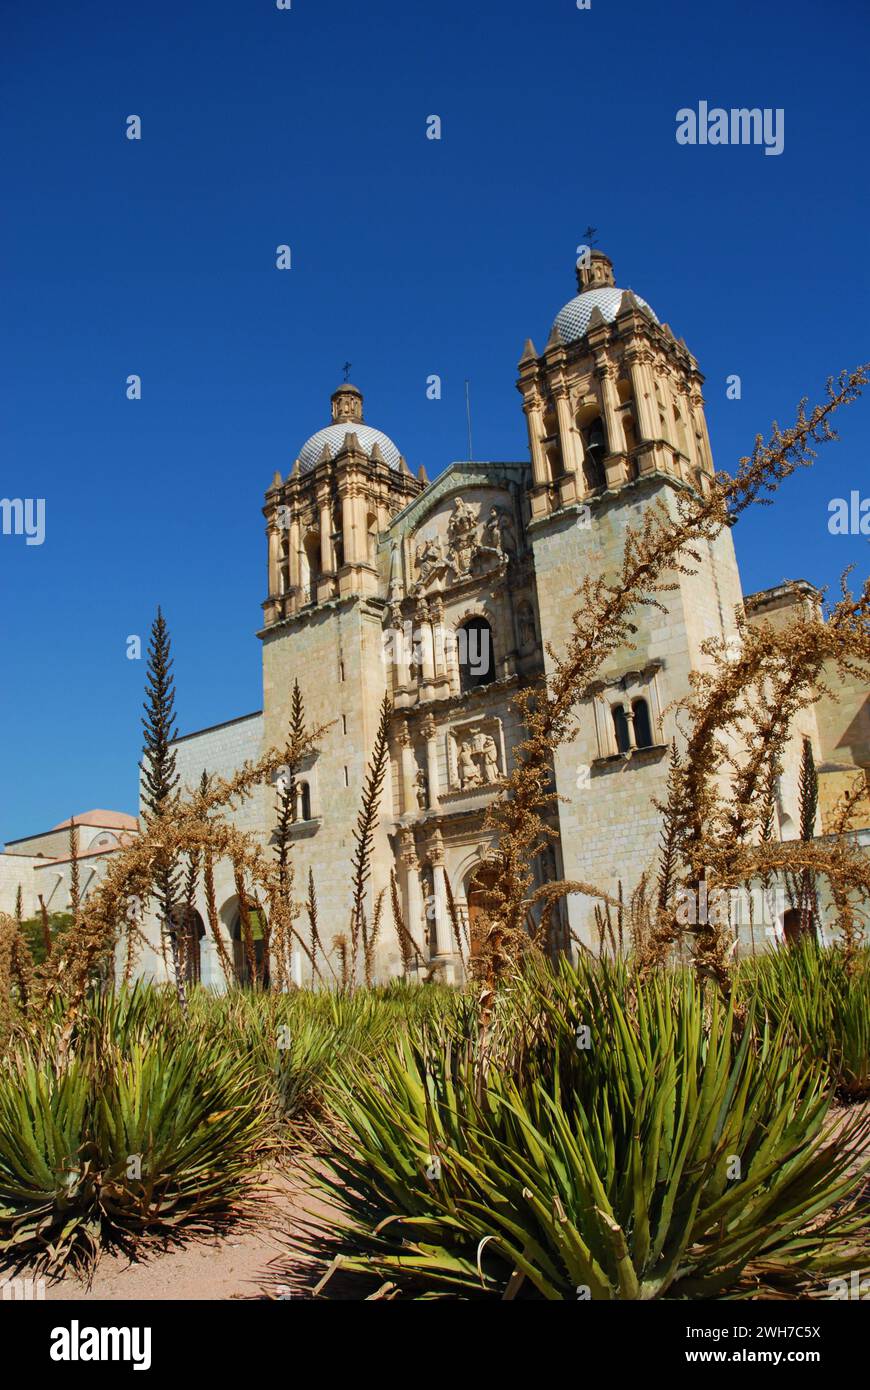 Eine katholische Kirche mit einer beeindruckenden Fassade in Oaxaca, Mexiko. Stockfoto